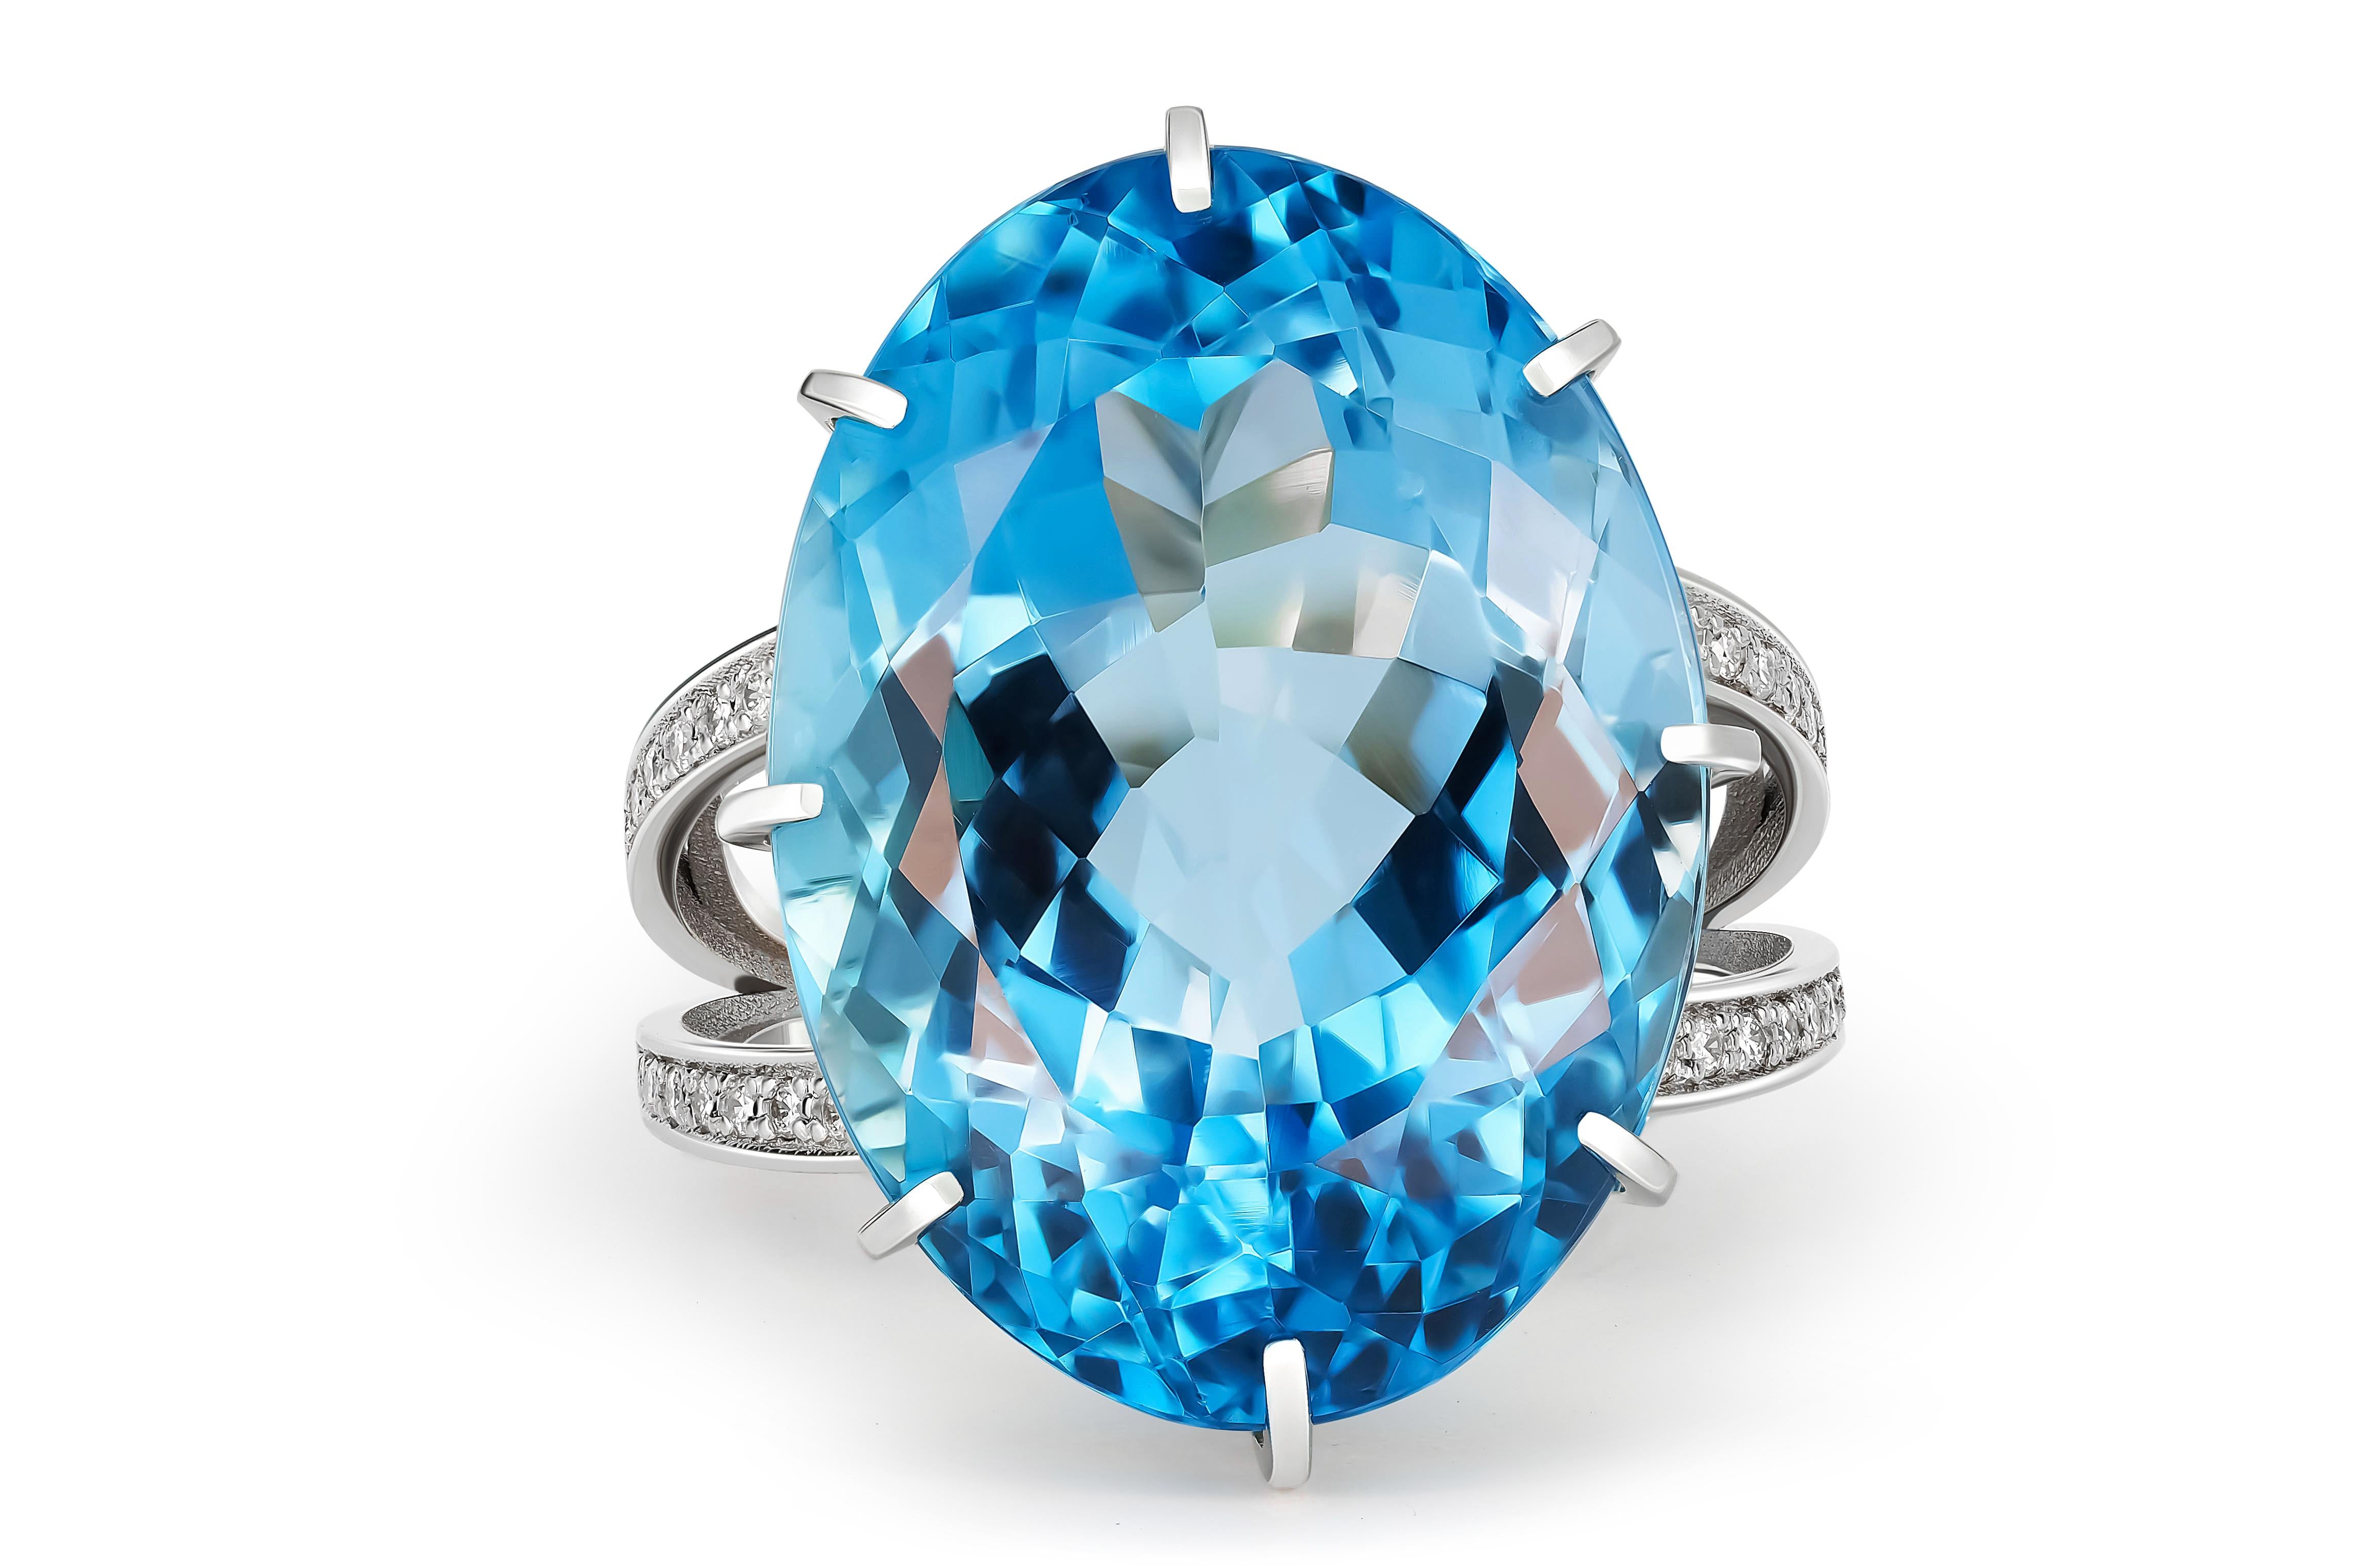 Massiver Ring mit Topas und Diamanten
14 Karat Gold
Gewicht: 10,1 g.
Set mit Topas , Farbe - blau
Ovaler Schliff, ca. 26 Karat (21,5x15,5x 10,3 mm)
Klarheit: Transparent mit Einschlüssen
Andere Steine:
Diamanten - runder Brillantschliff, G/VS, 32 x